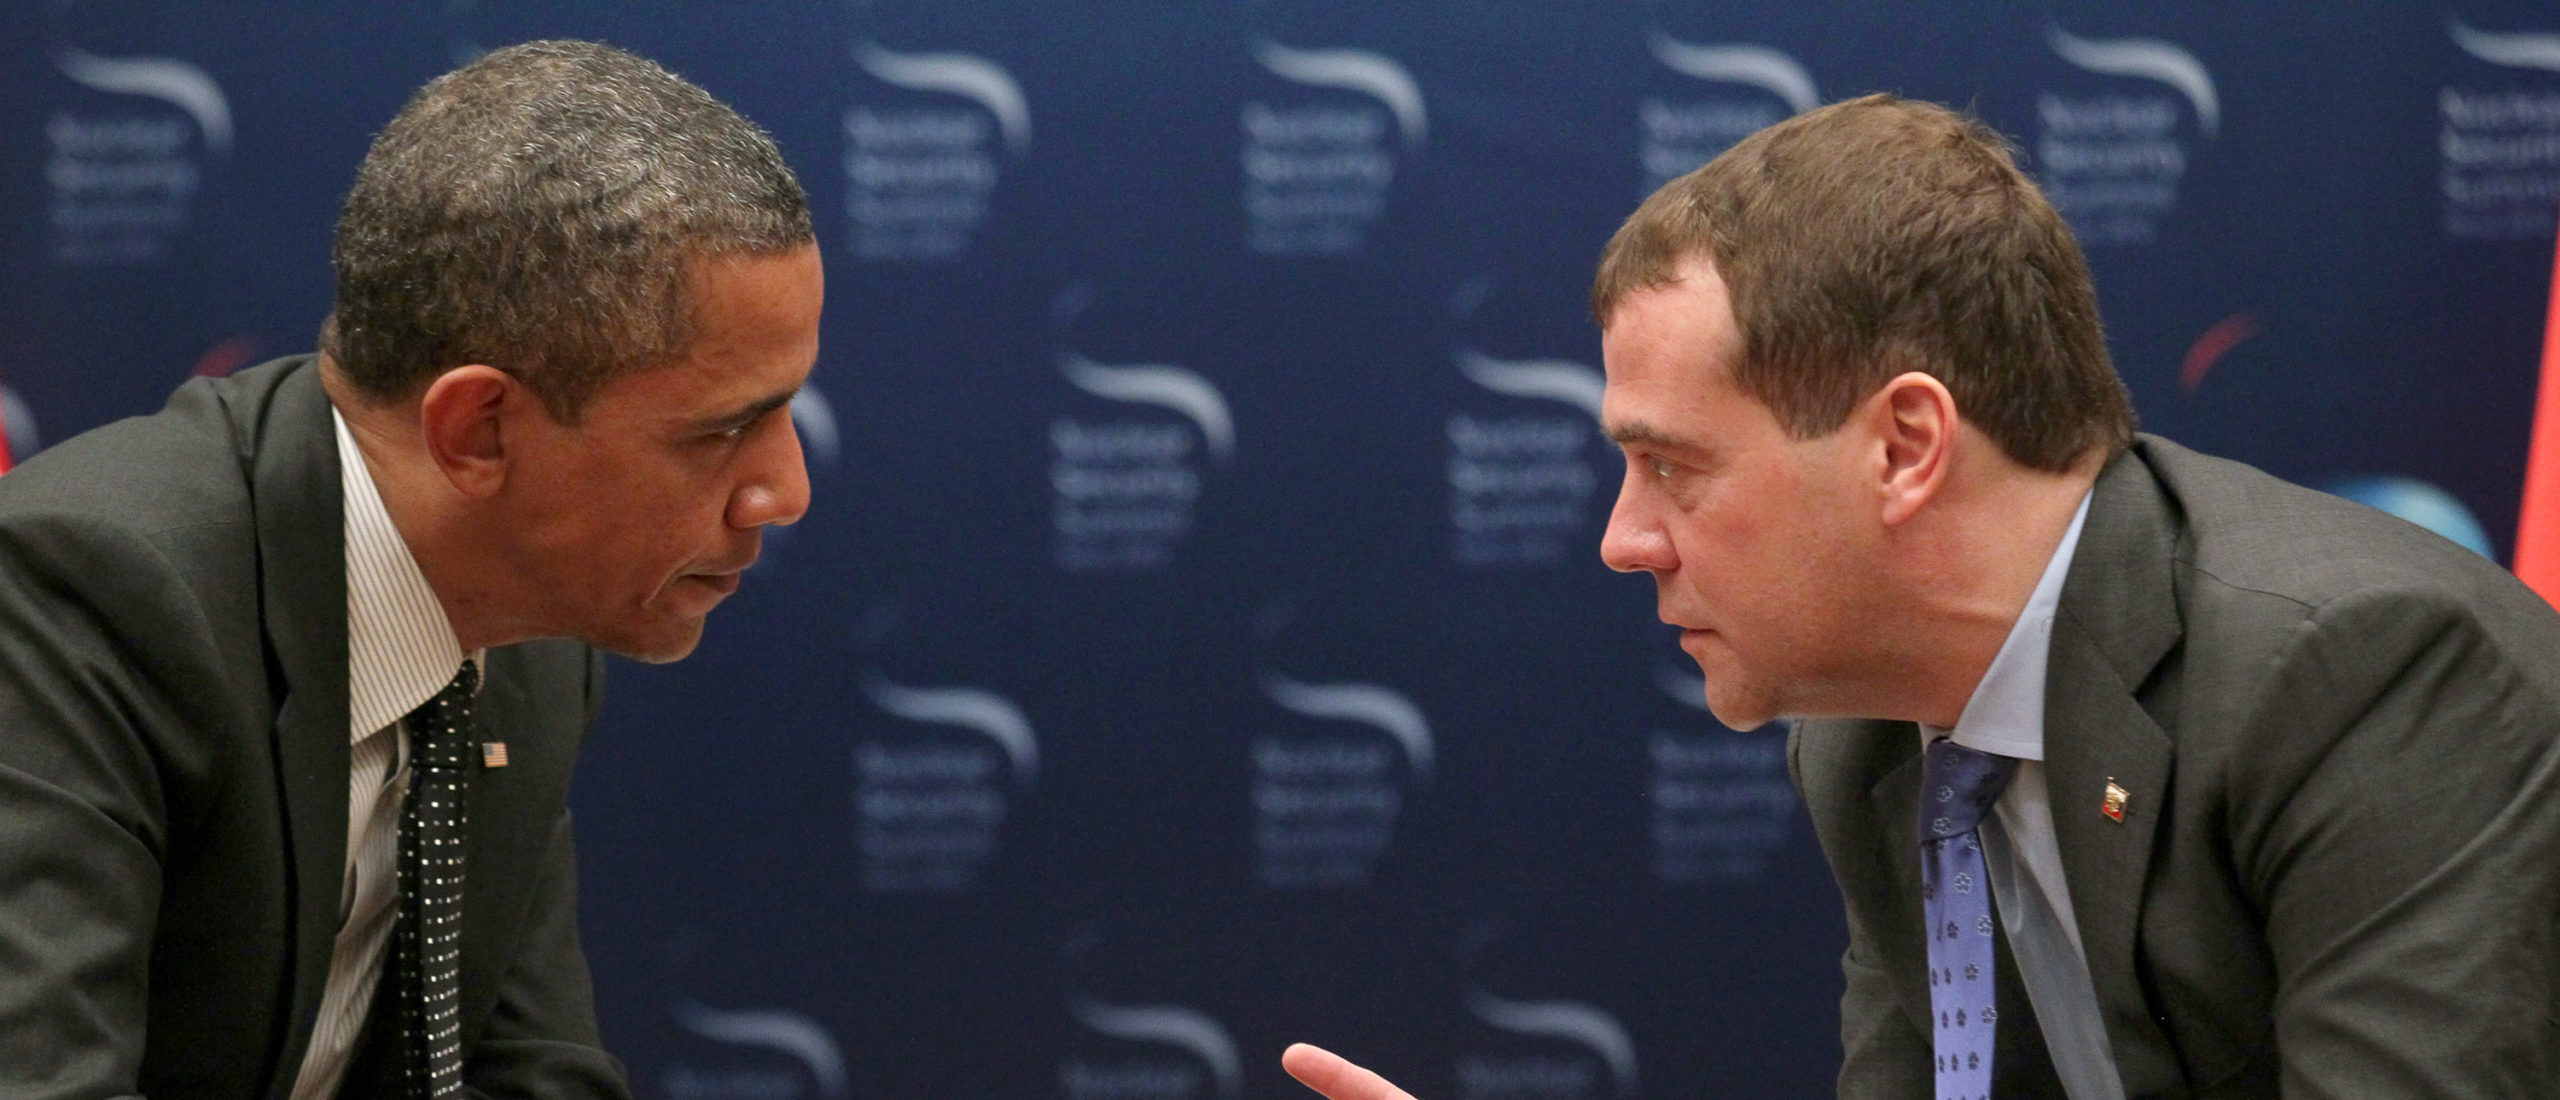 Медведев и Обама. Медведев критика. Медведев болтает ножками. Новости бизнеса политики